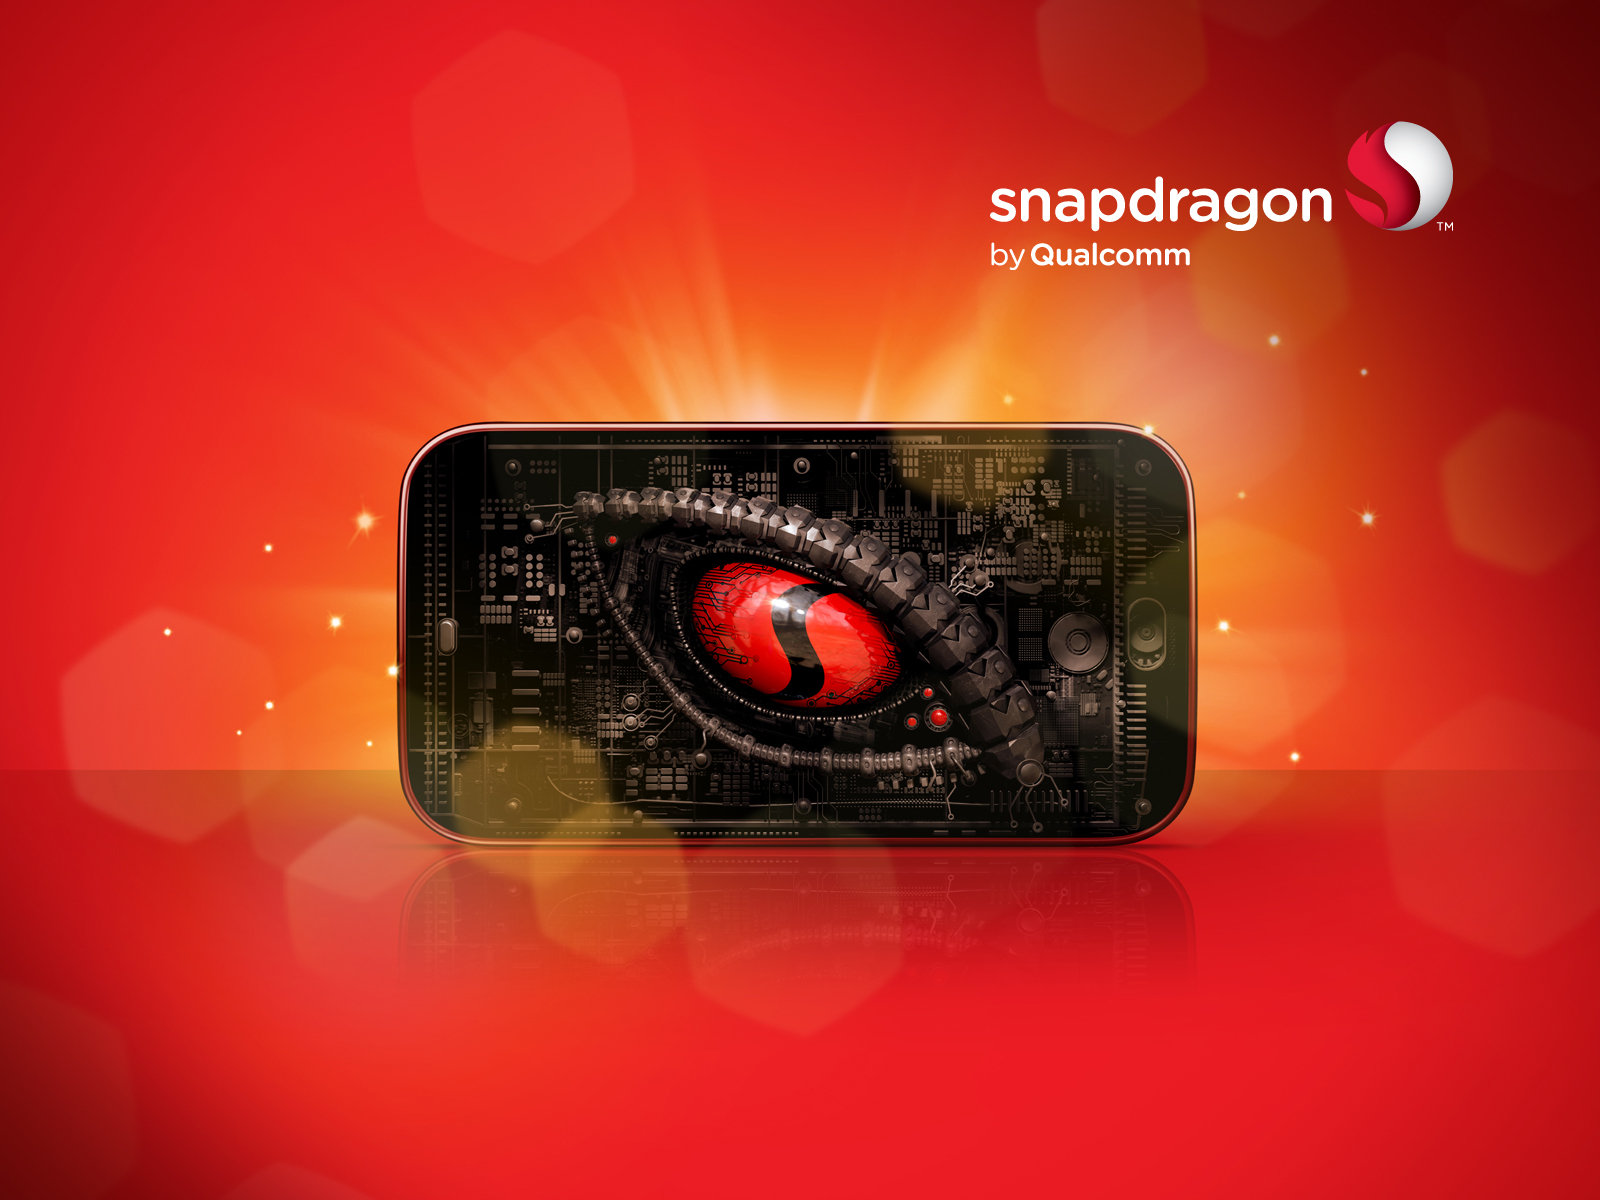 หลุด !! รายละเอียดสเปคชิป Snapdragon 835 และ Snapdragon 660 เตรียมลงสมาร์ทโฟนต้นปีหน้า !!